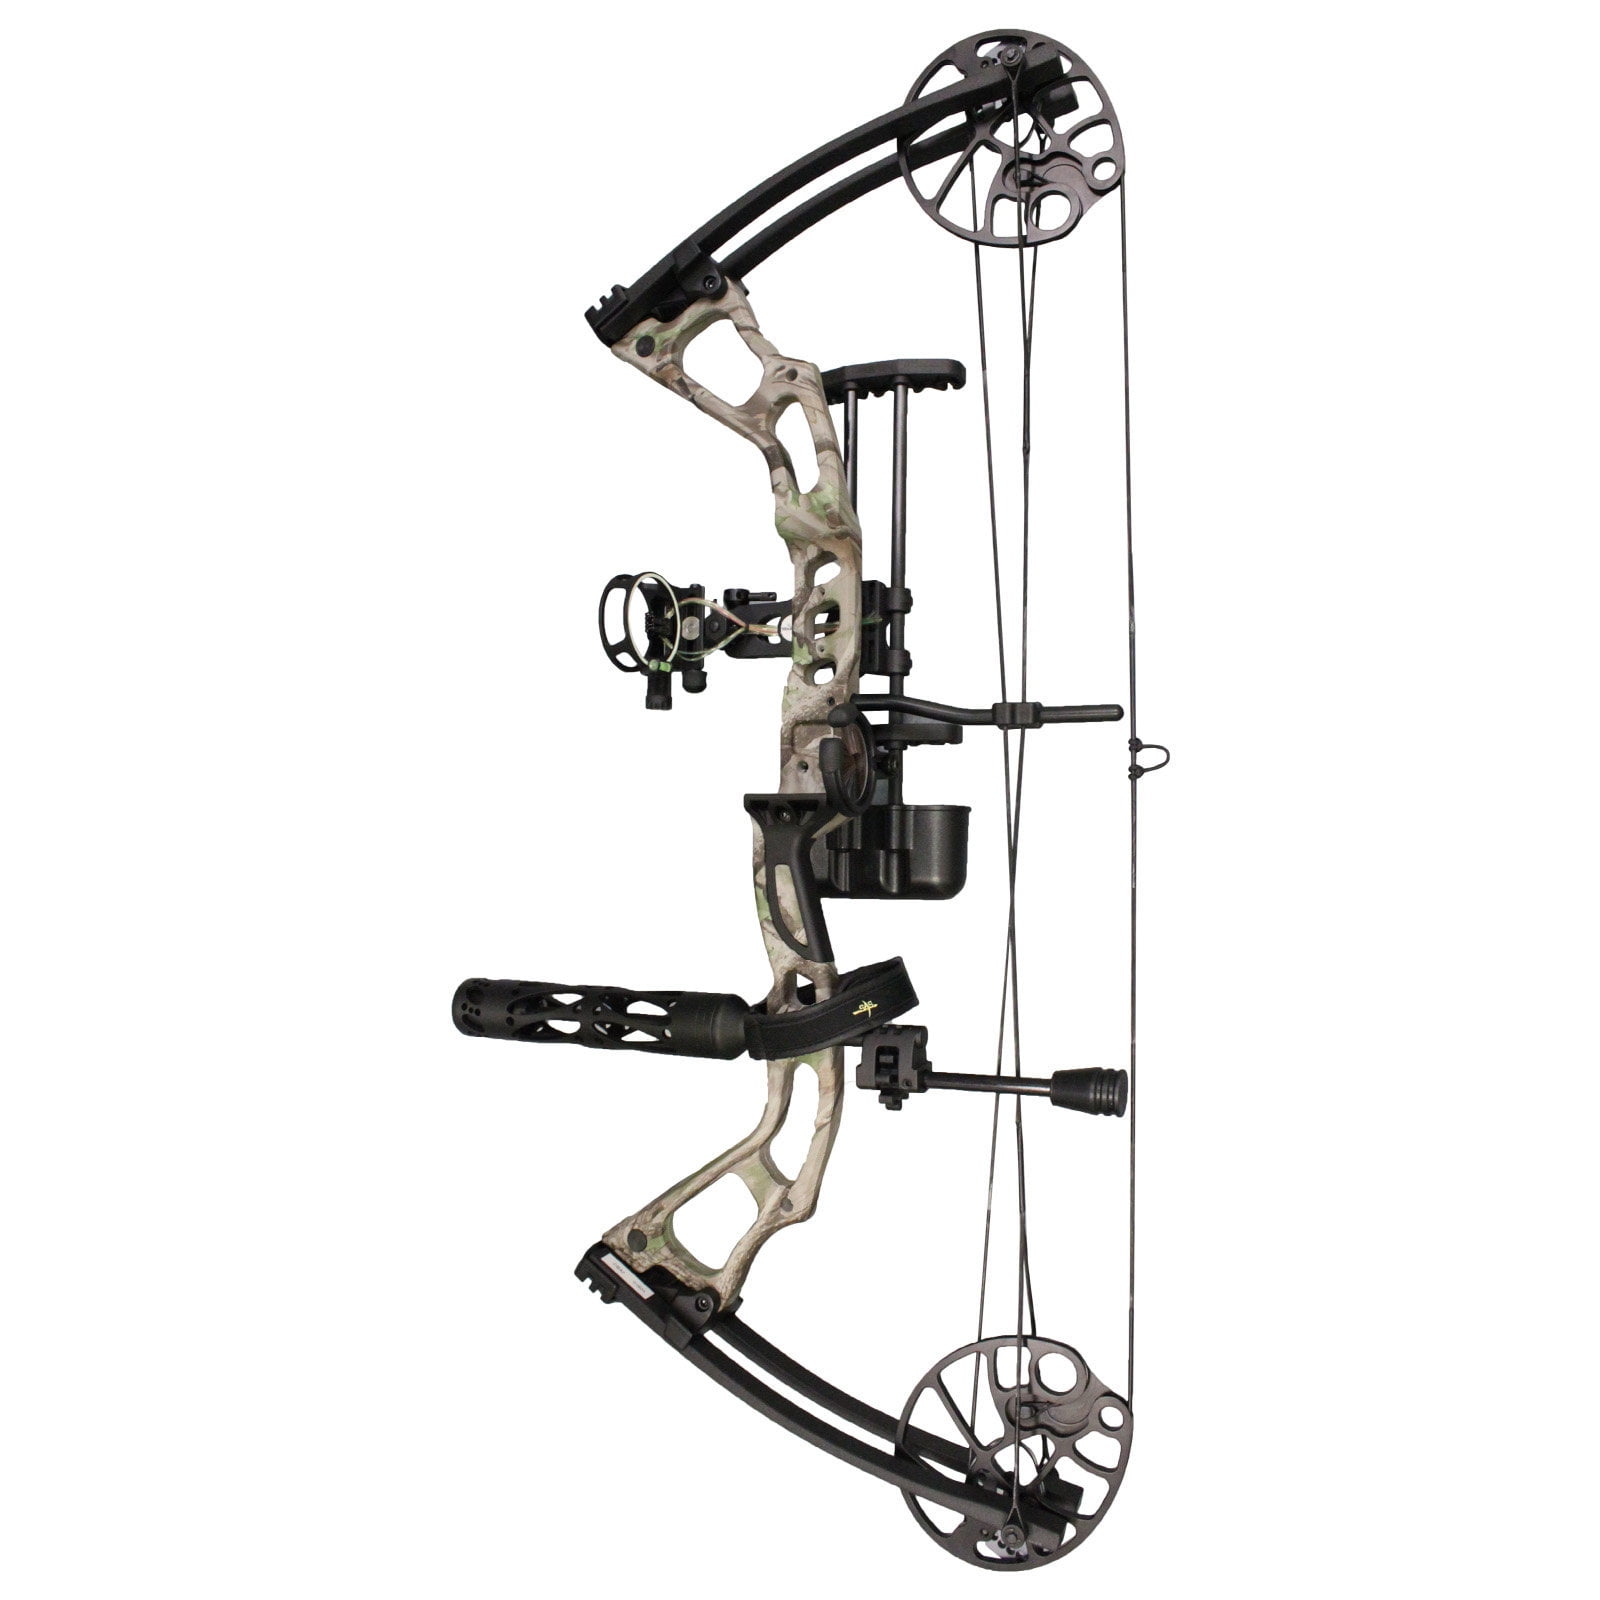 Archery Pro Series Adult Black Compound Bow Set 50-70lb Arrow Rest Sight & Bag 